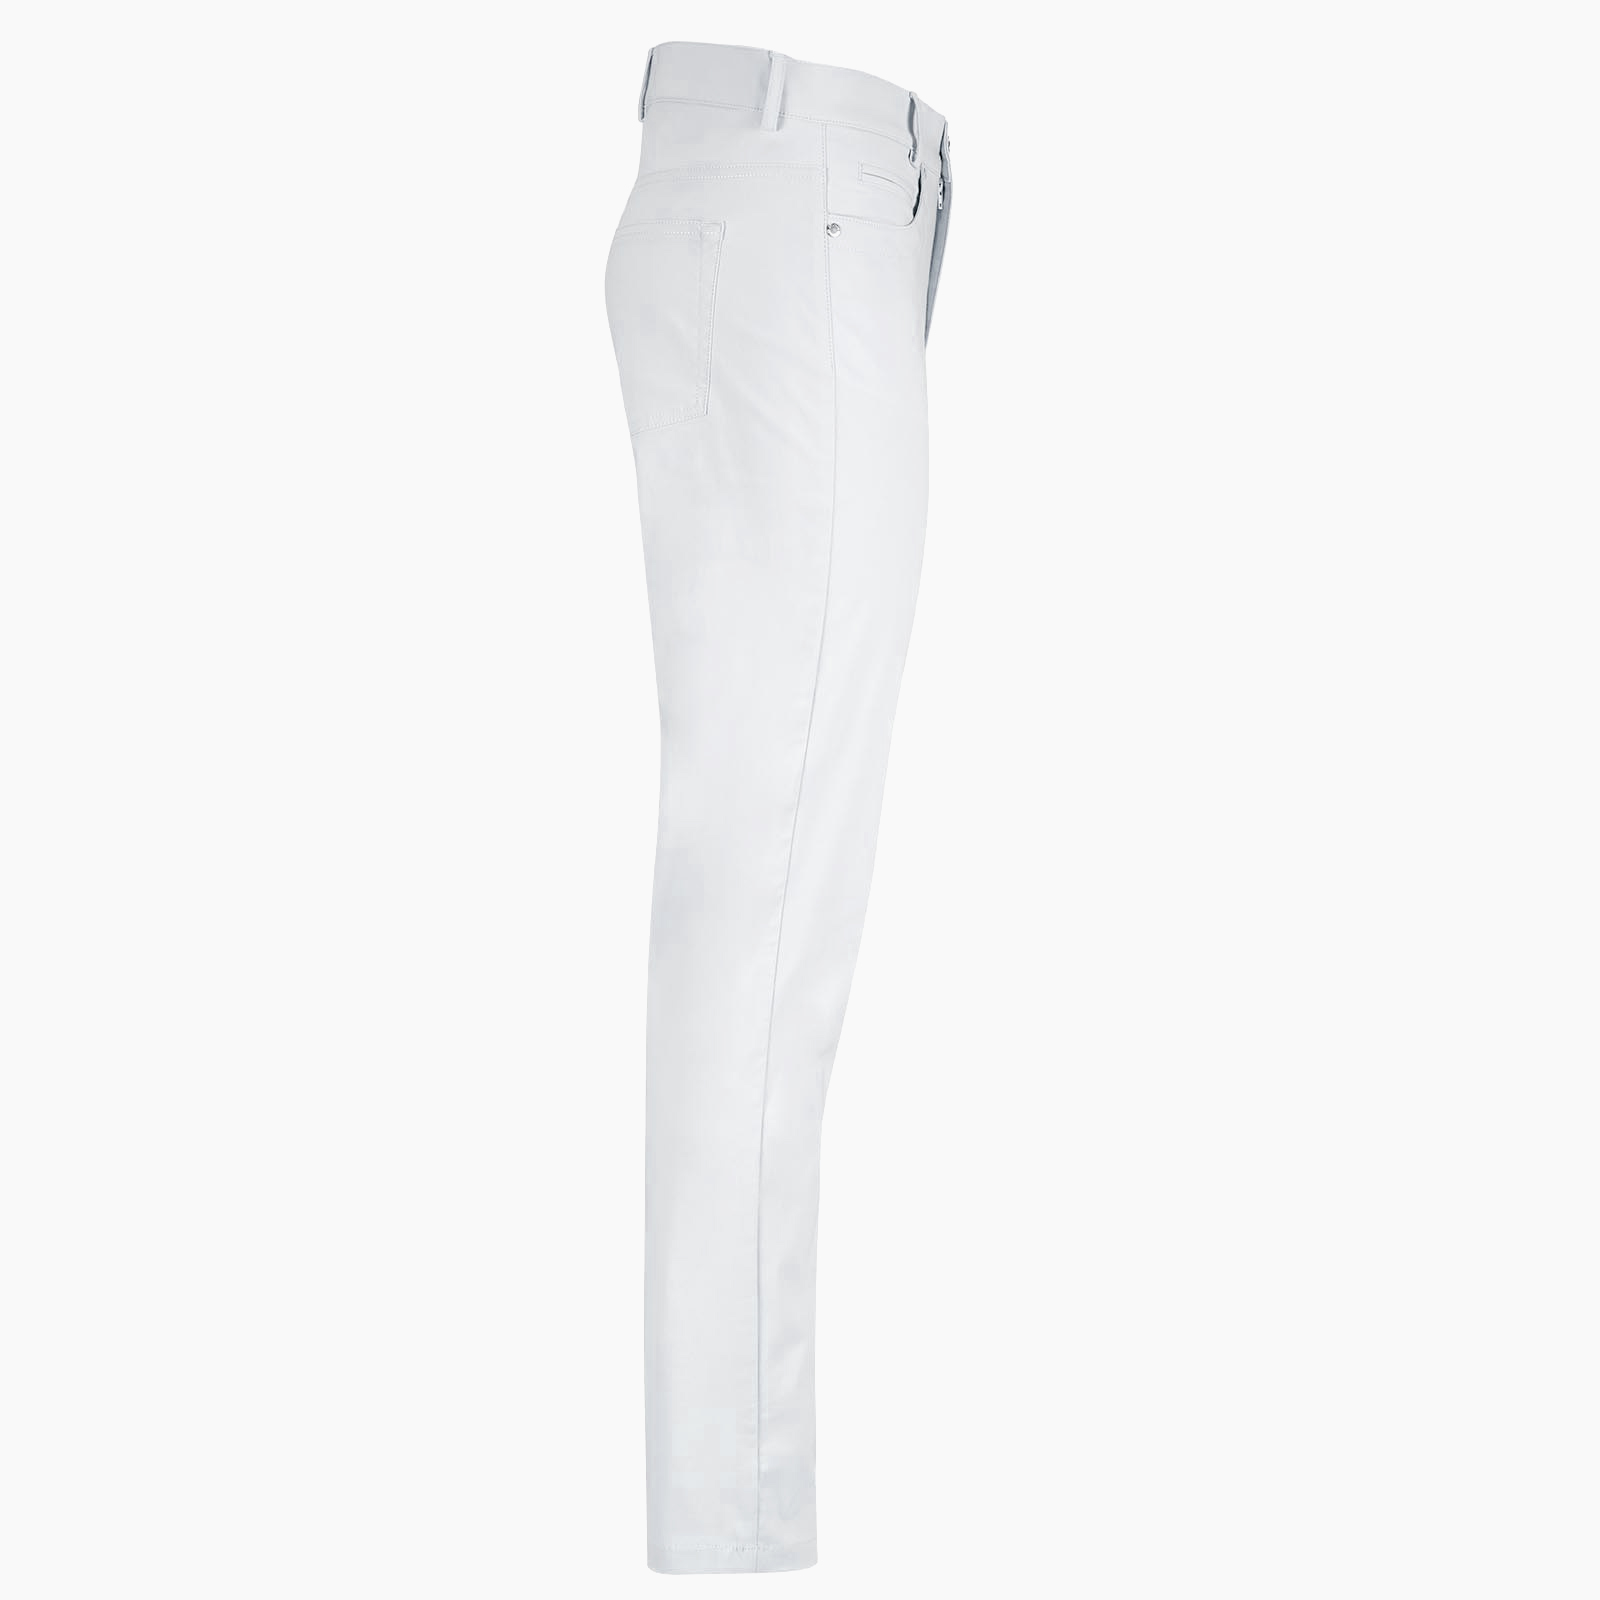 Pantalón de mujer de 7/8 con diseño de 5 bolsillos de tejido elástico con protección solar